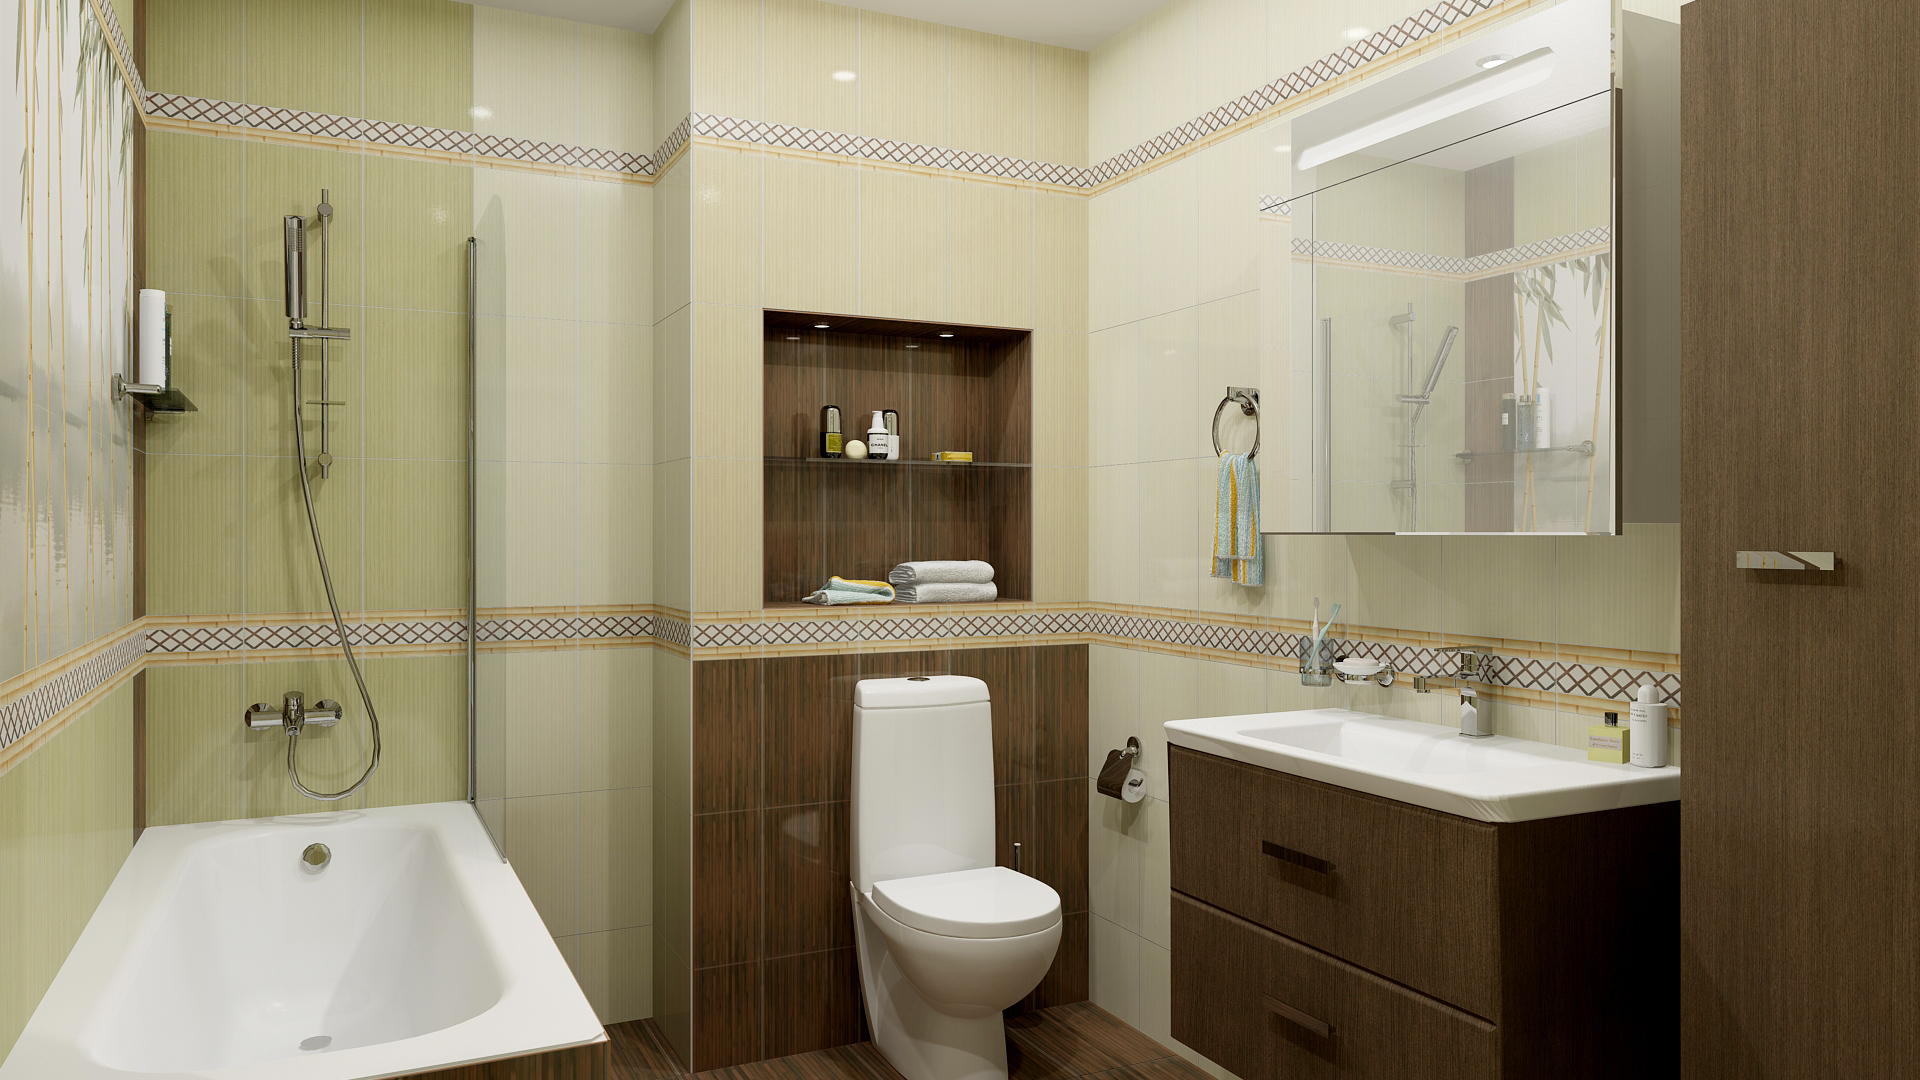 Бюджетный ремонт ванной комнаты: фото примеры | онлайн-журнал о ремонте и дизайне